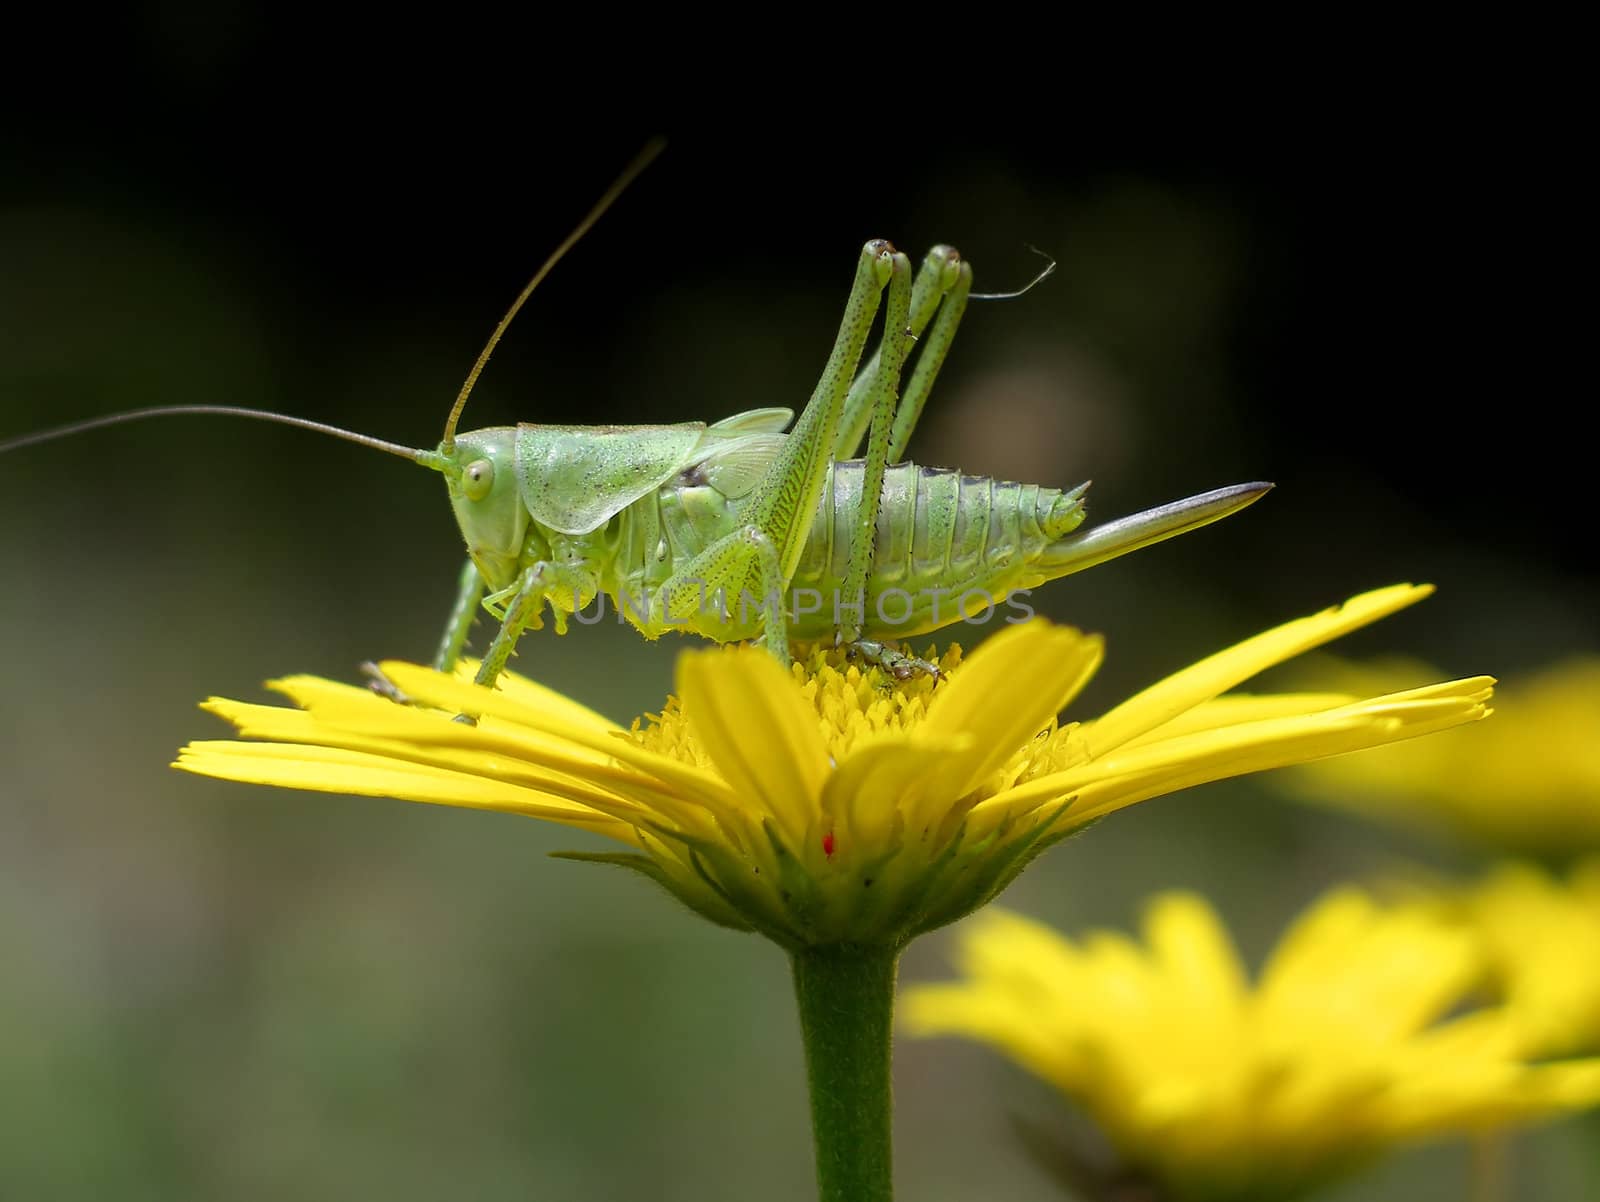 Grasshopper by monner